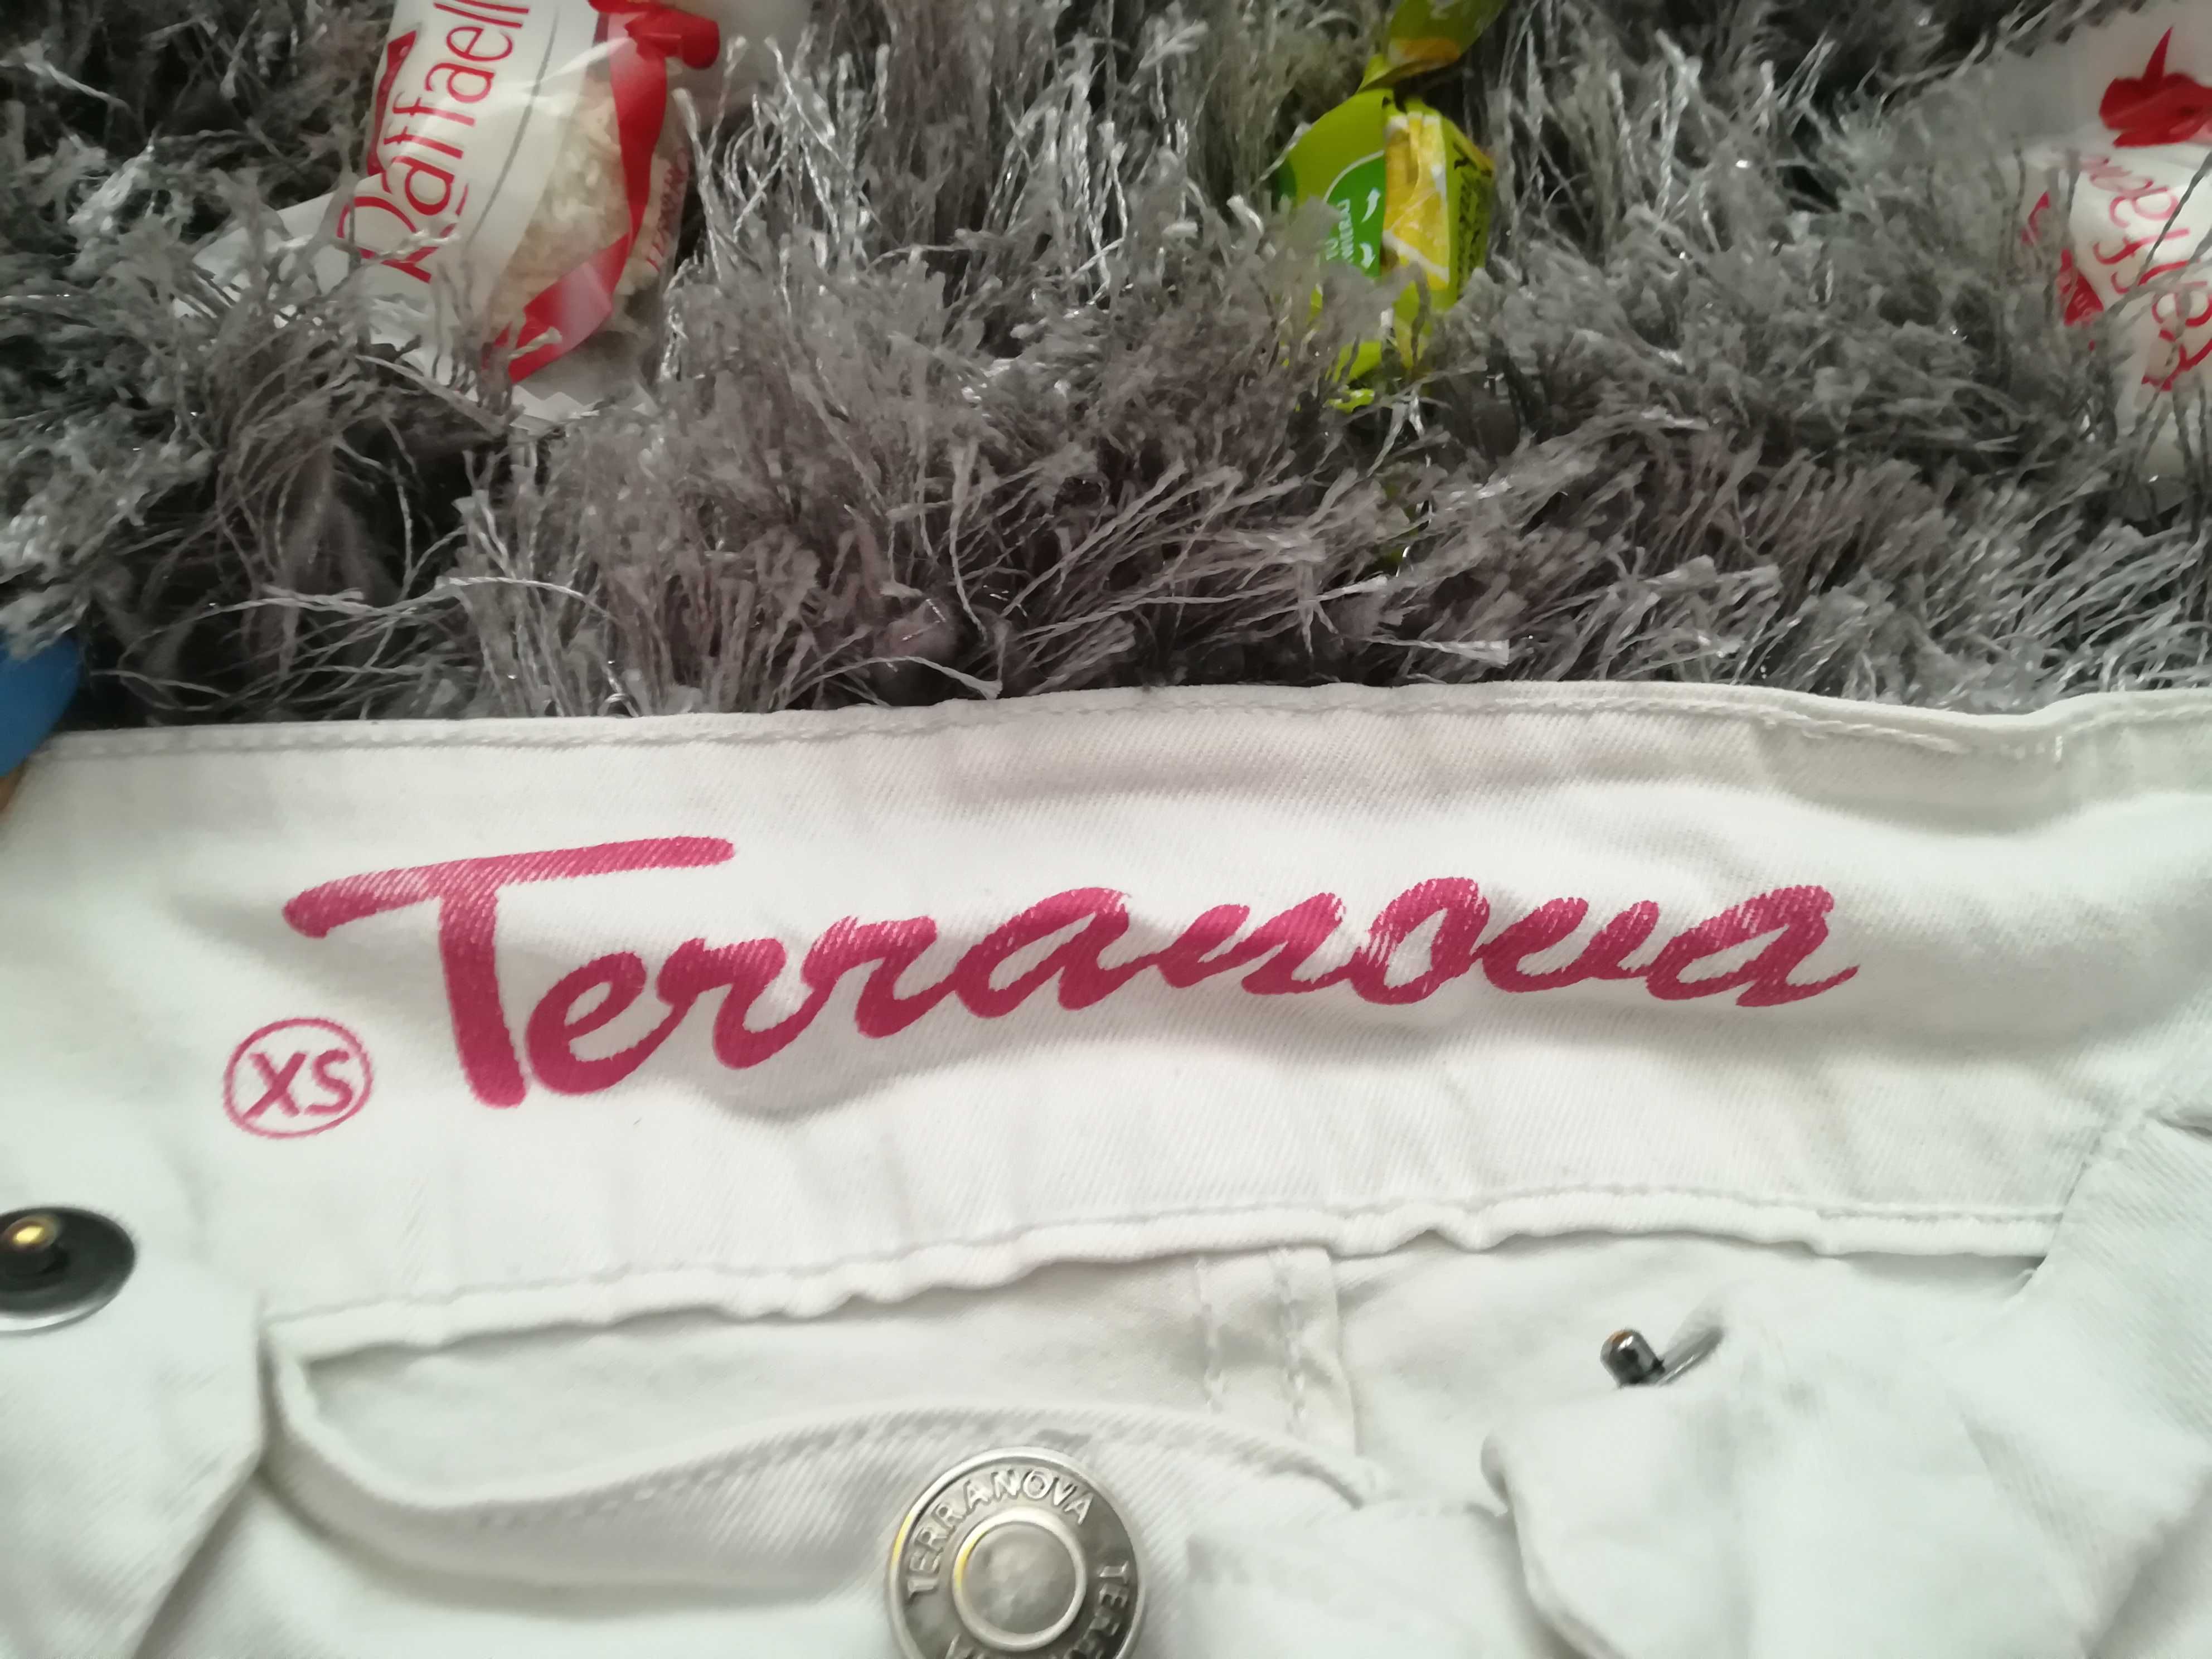 Spodenki jeansowe białe, rybaczki damskie Terranowa. XS. Kolor biały.